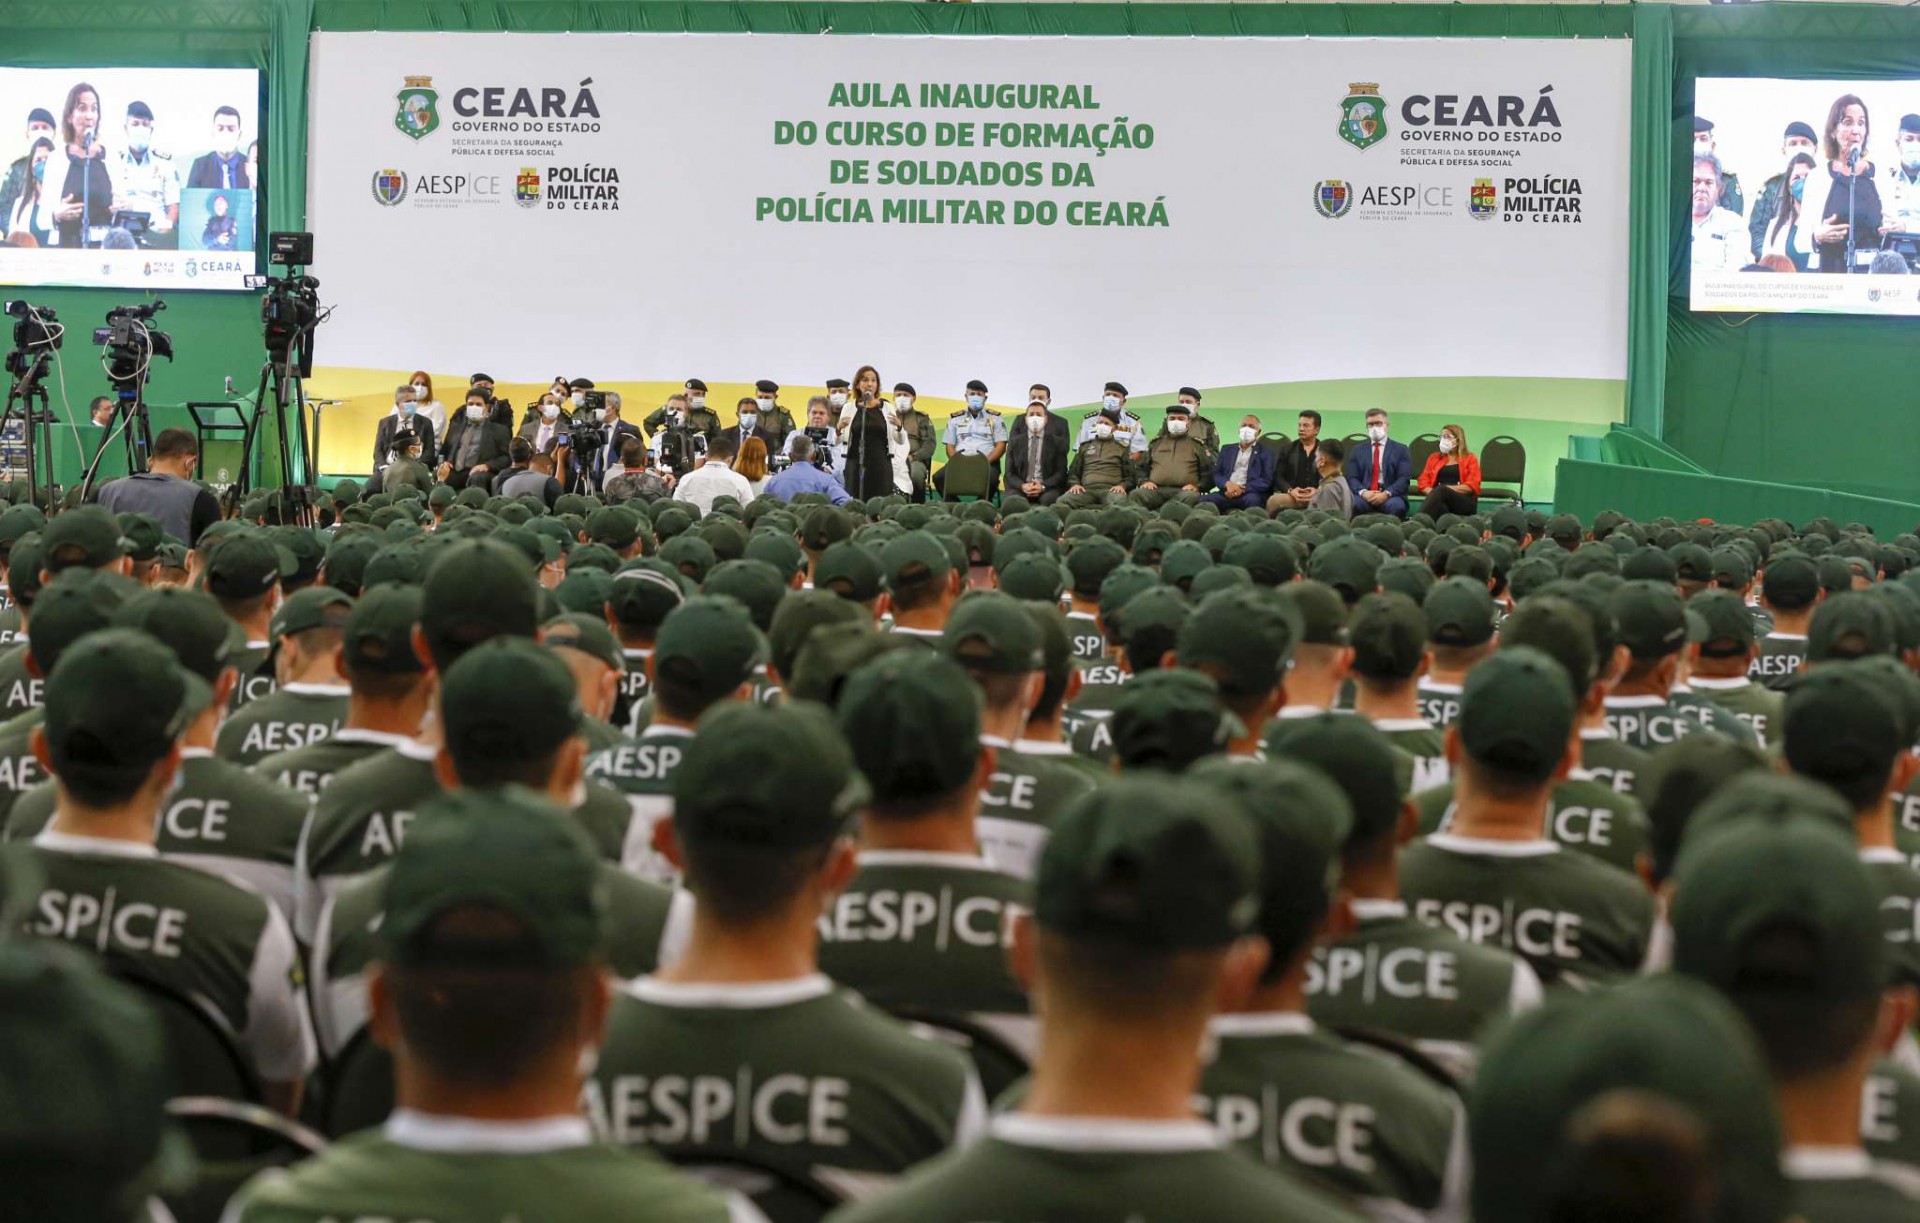  2.400 alunos começam nesta quarta-feira, 22, Curso de Formação de Soldados da Polícia Militar do Ceará